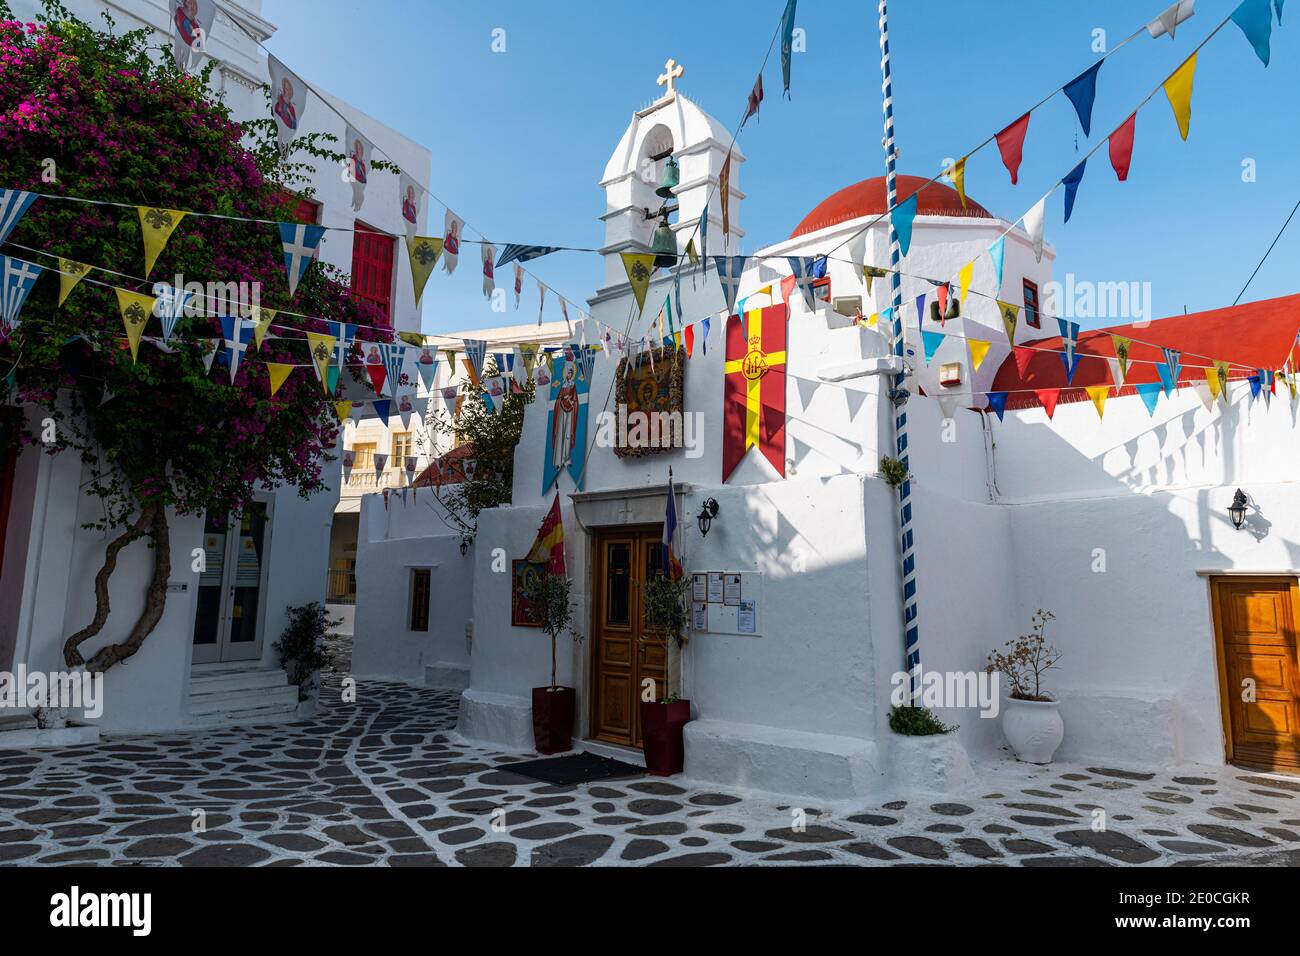 La vieille ville blanche de Horta, Mykonos, Cyclades, Iles grecques, Grèce, Europe Banque D'Images